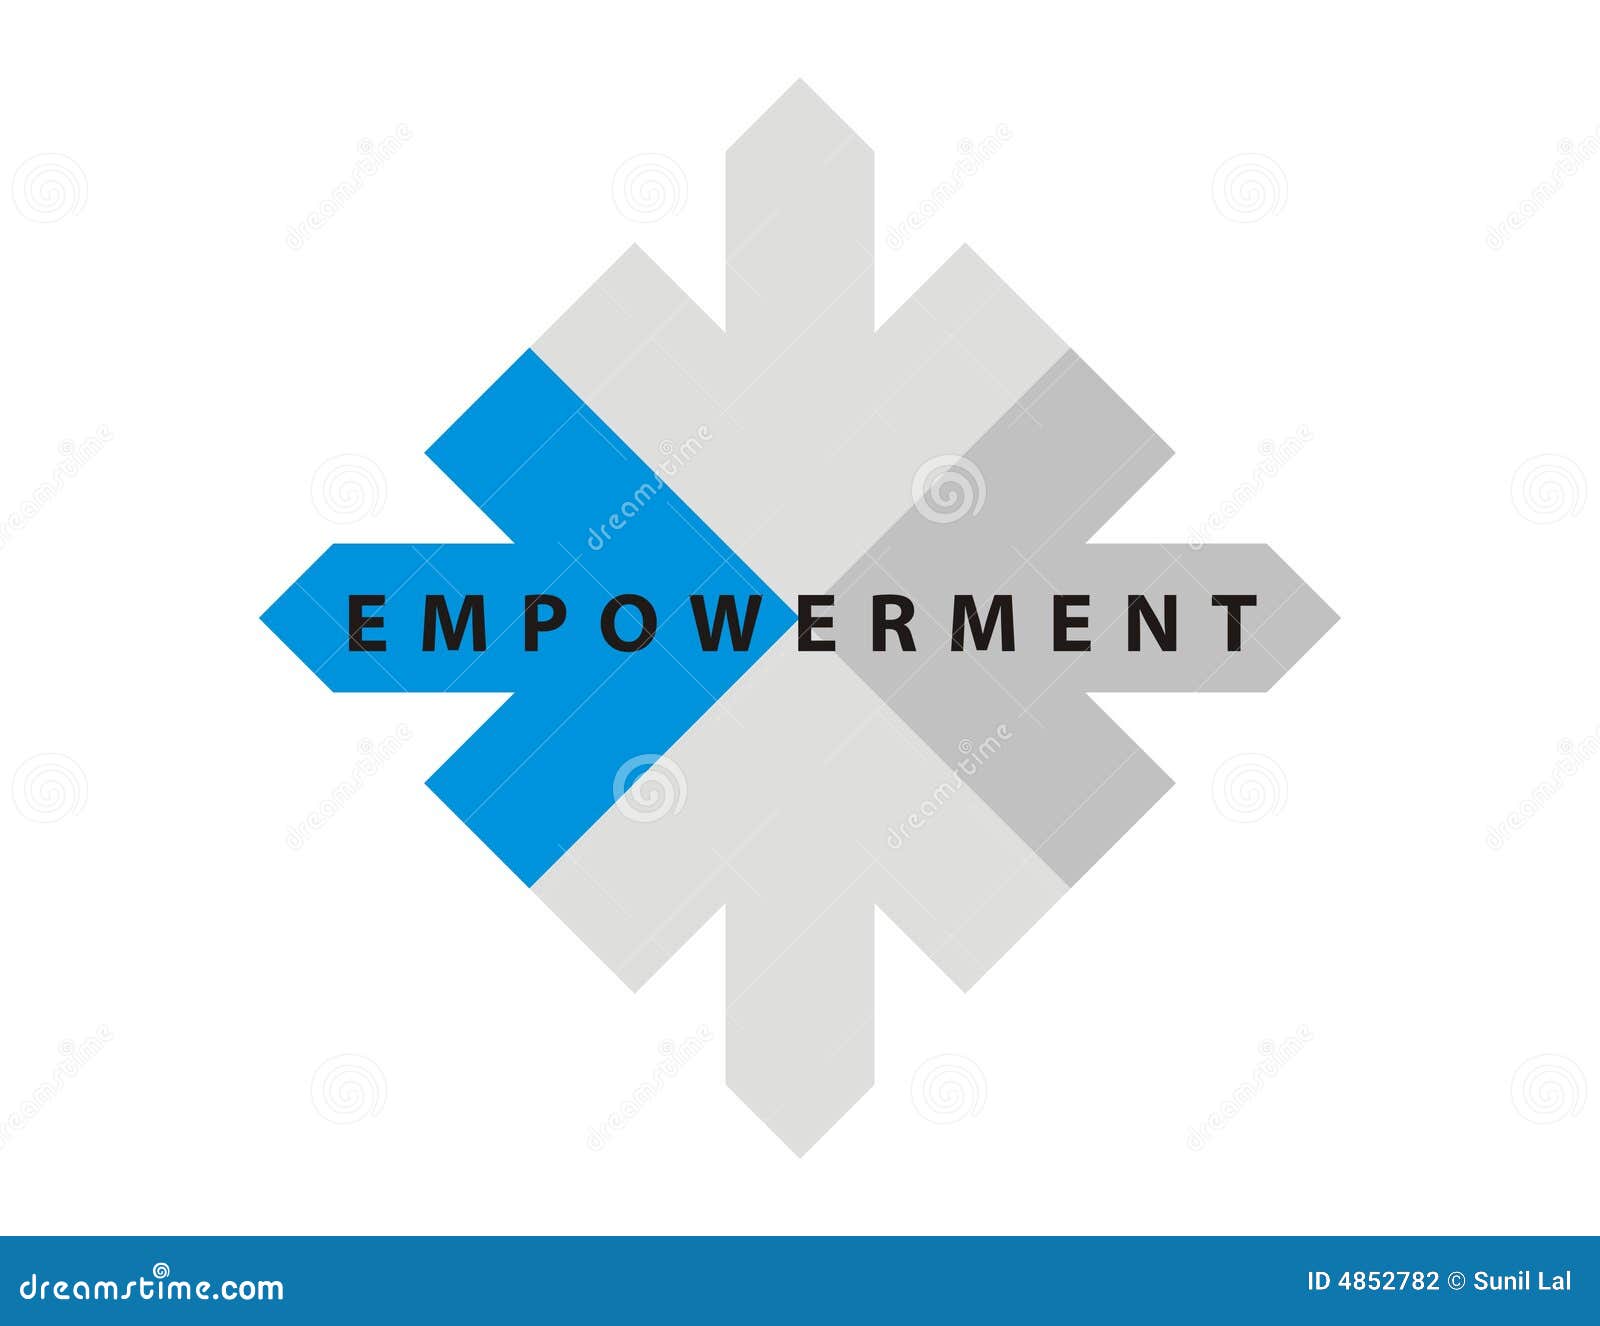 caption / logo-empowerment-1